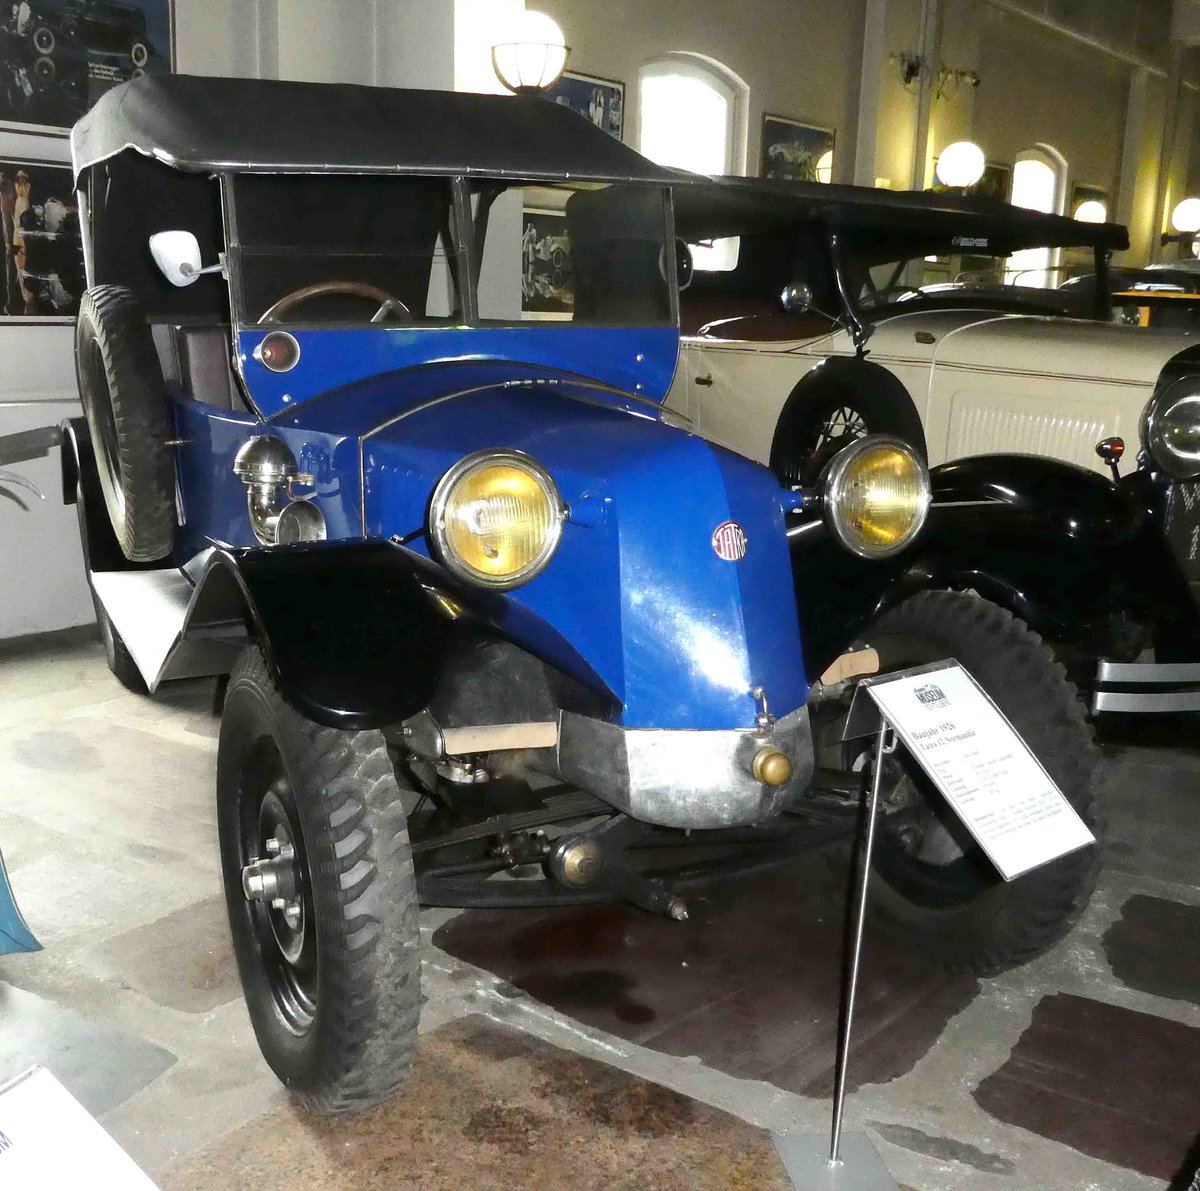 =Tatra 12 Normandie, Bj. 1926, 1057 ccm, 2 Zyl., 28 PS, präsentiert im Deutschen Automobilmuseum Fichtelberg im Juli 2018